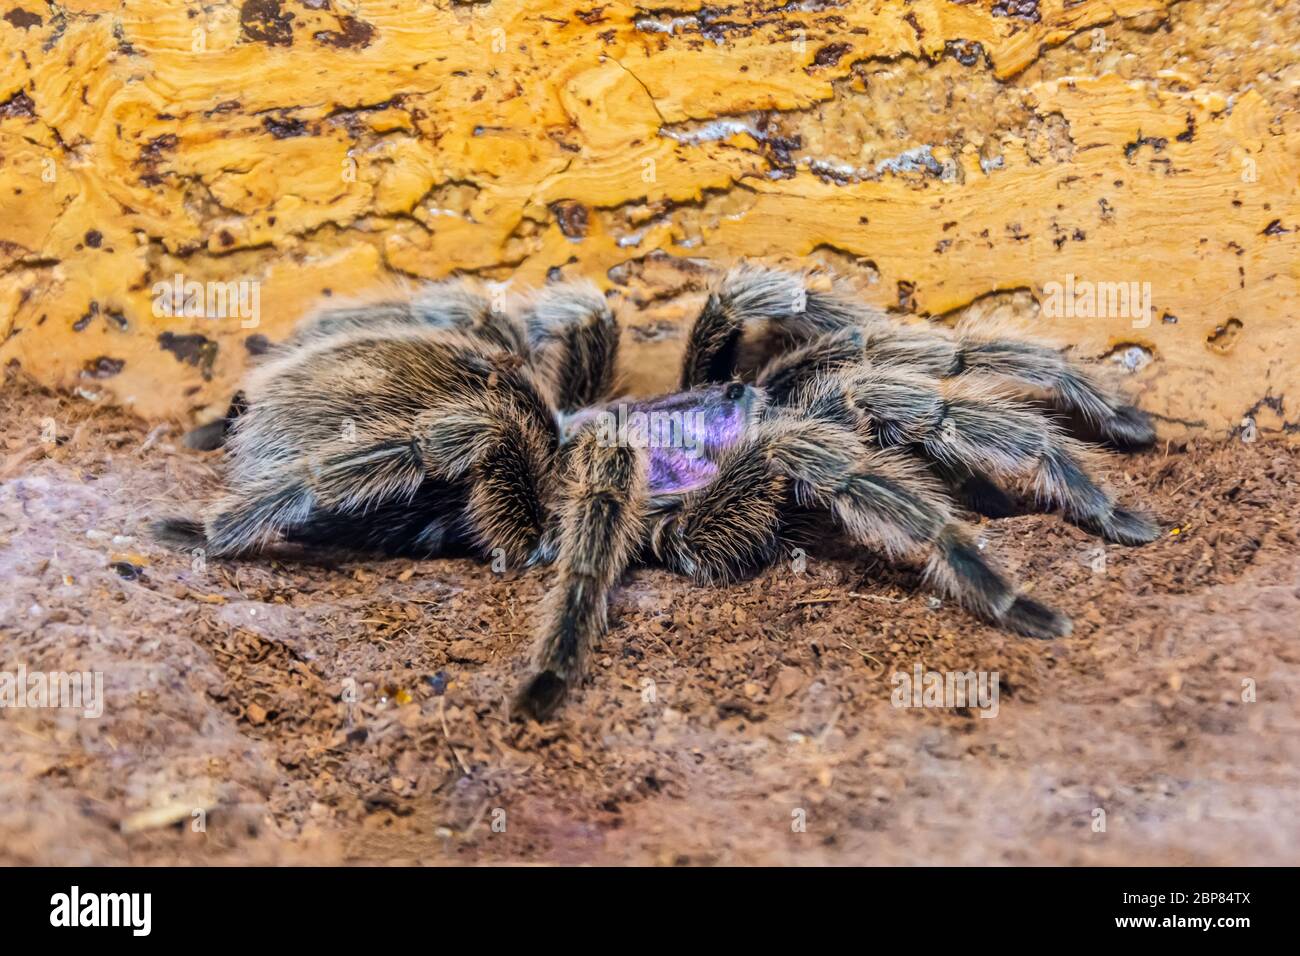 Schwarz mit violettem Farbton eine riesige Tarantula-Spinne sitzt auf dem Boden im Wald Stockfoto